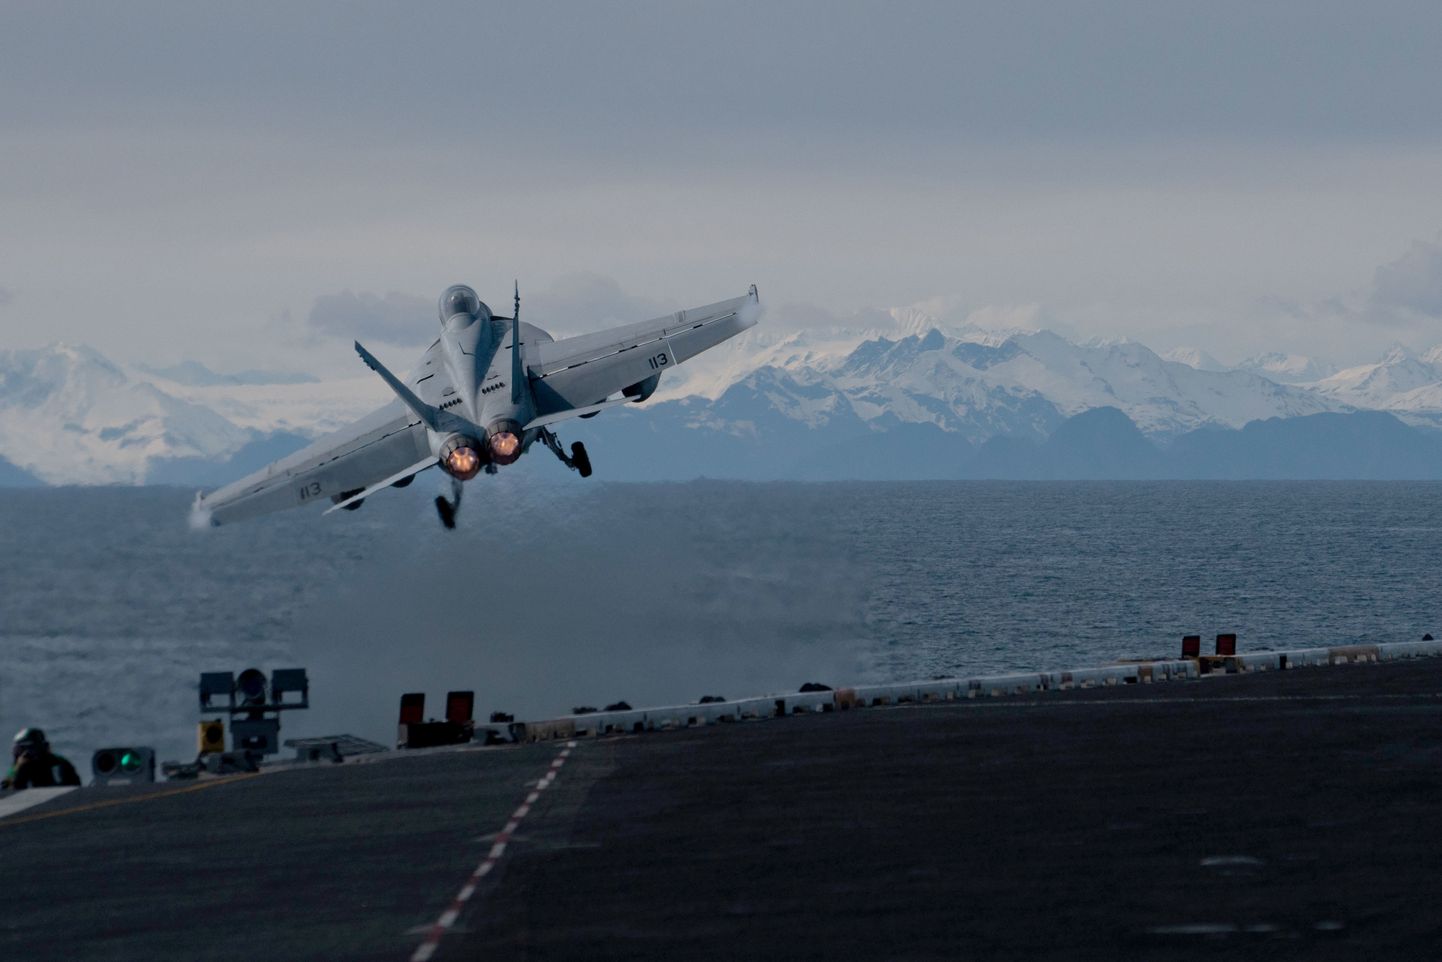 Ameerika Ühendriikide hävituslennuk õppustel Alaska ranniku lähedal.